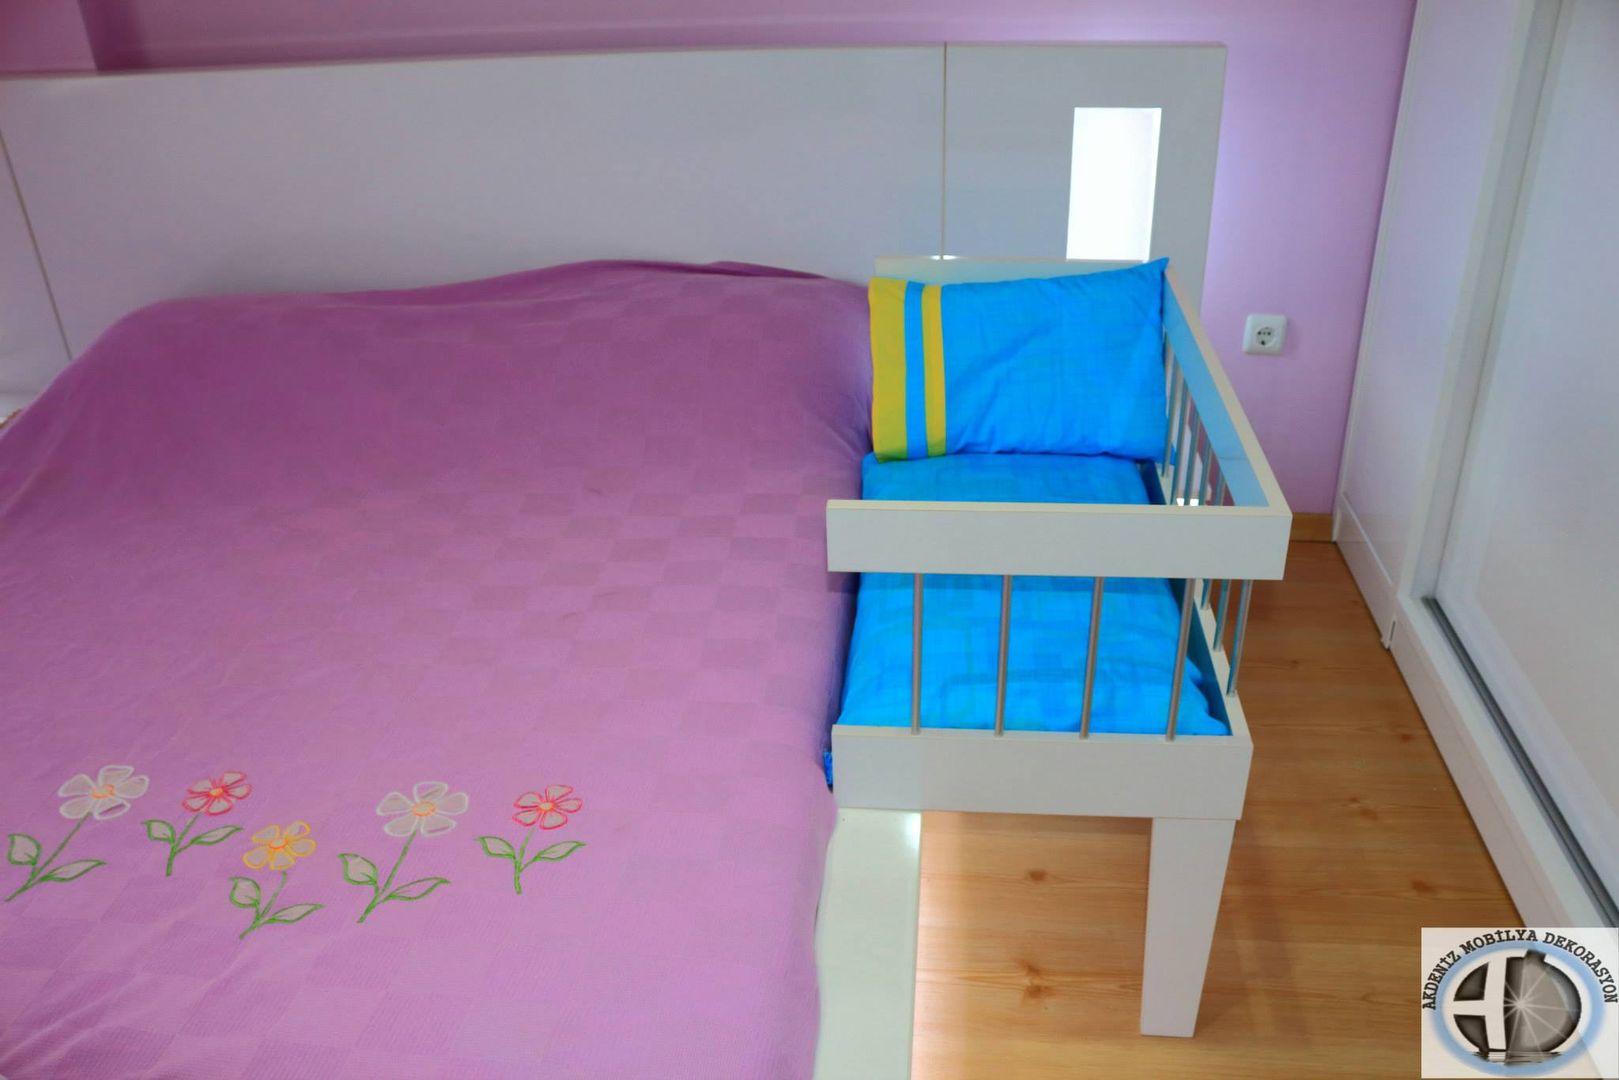 Anne Yanı Beşiği, Akdeniz Dekorasyon Akdeniz Dekorasyon غرفة الاطفال Beds & cribs